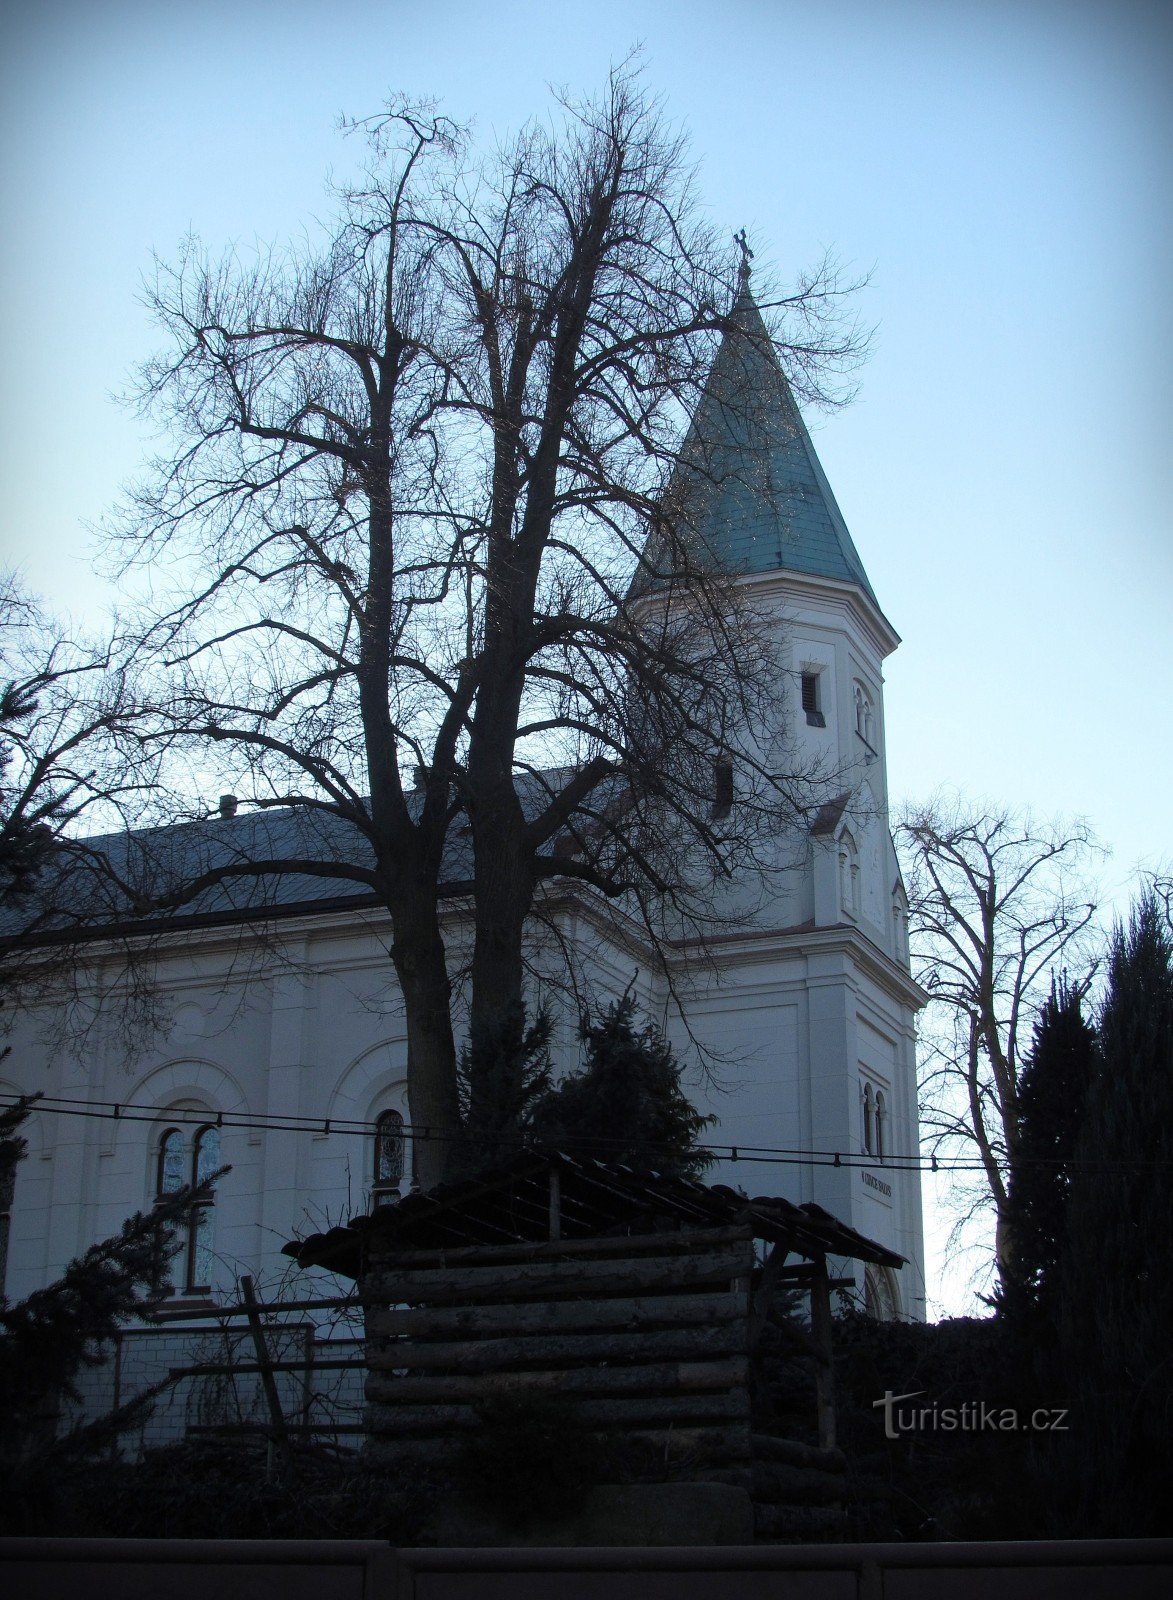 Žeranovice - nhà thờ St. Lawrence